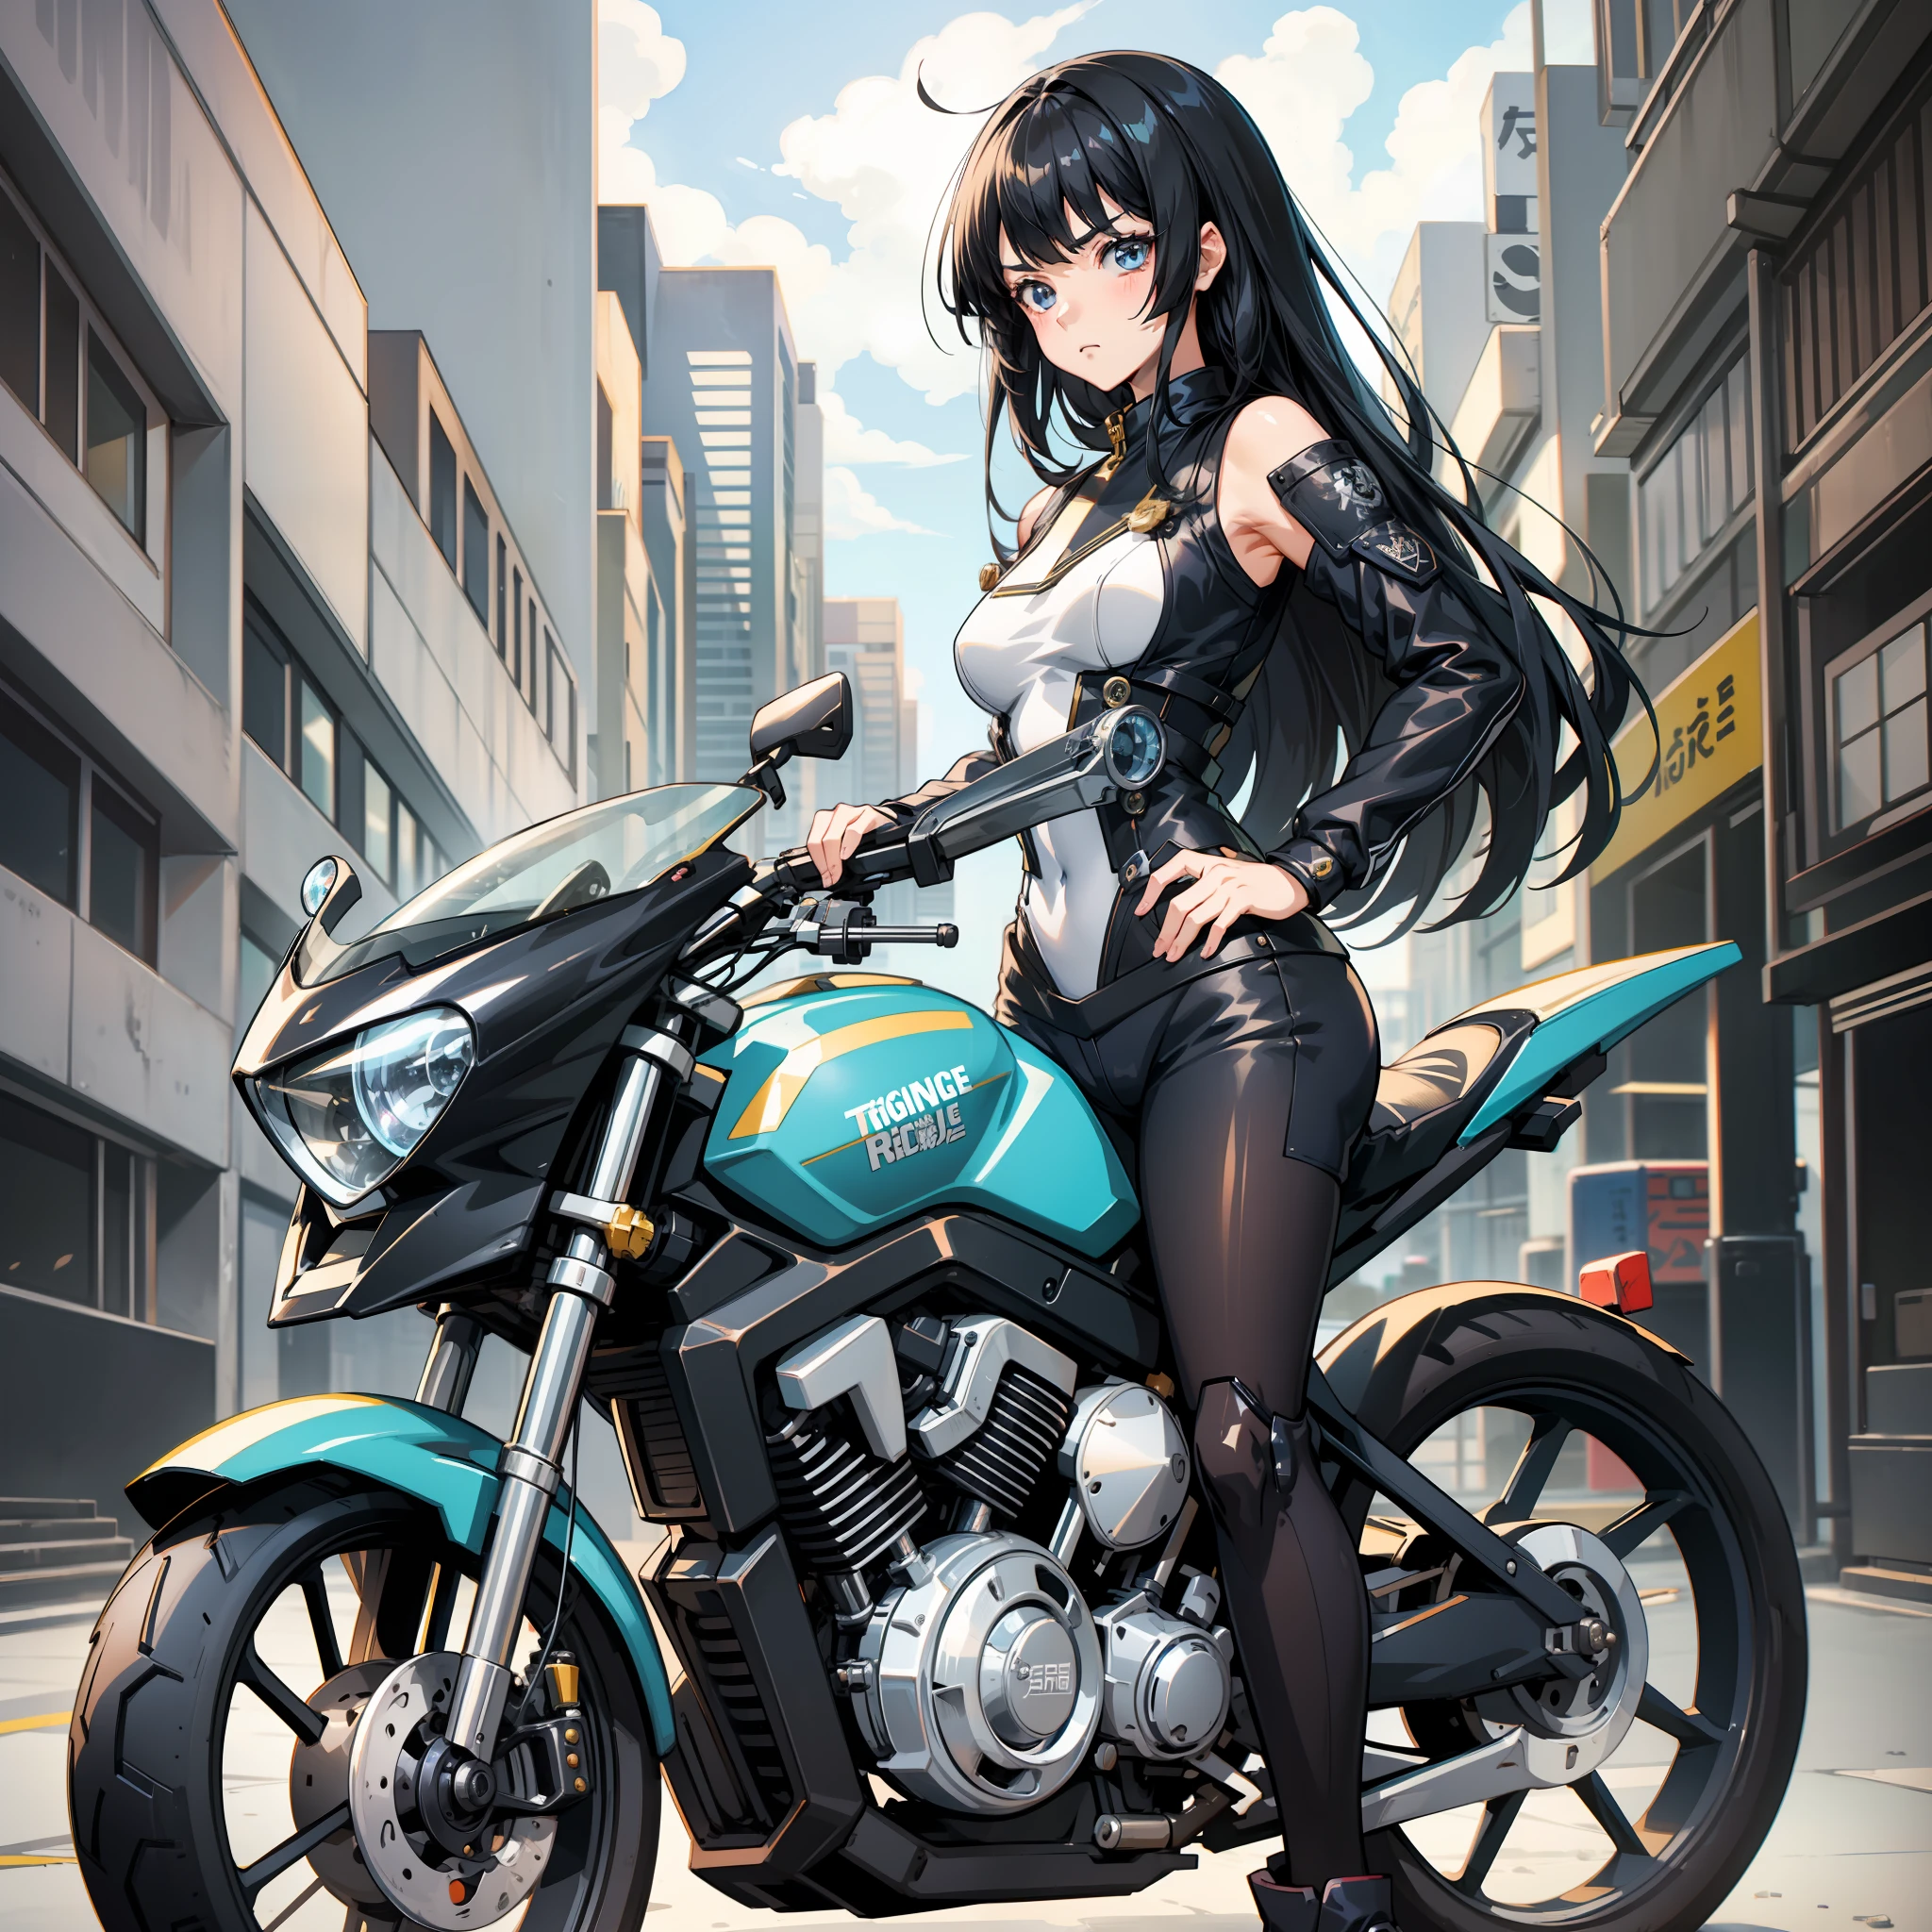 Anime-Figur eines Mädchens in High Heels mit schwarzen Haaren, Pony bedeckt die Augenbrauen, lange Haare, kurzes Haar, ausdruckslos, 3. Stil zusammenbrechen, chic, kälter, japanischer Animationsstudio-Stil, Meisterwerk, mädchen das motorrad fährt, Moe-Kunststil